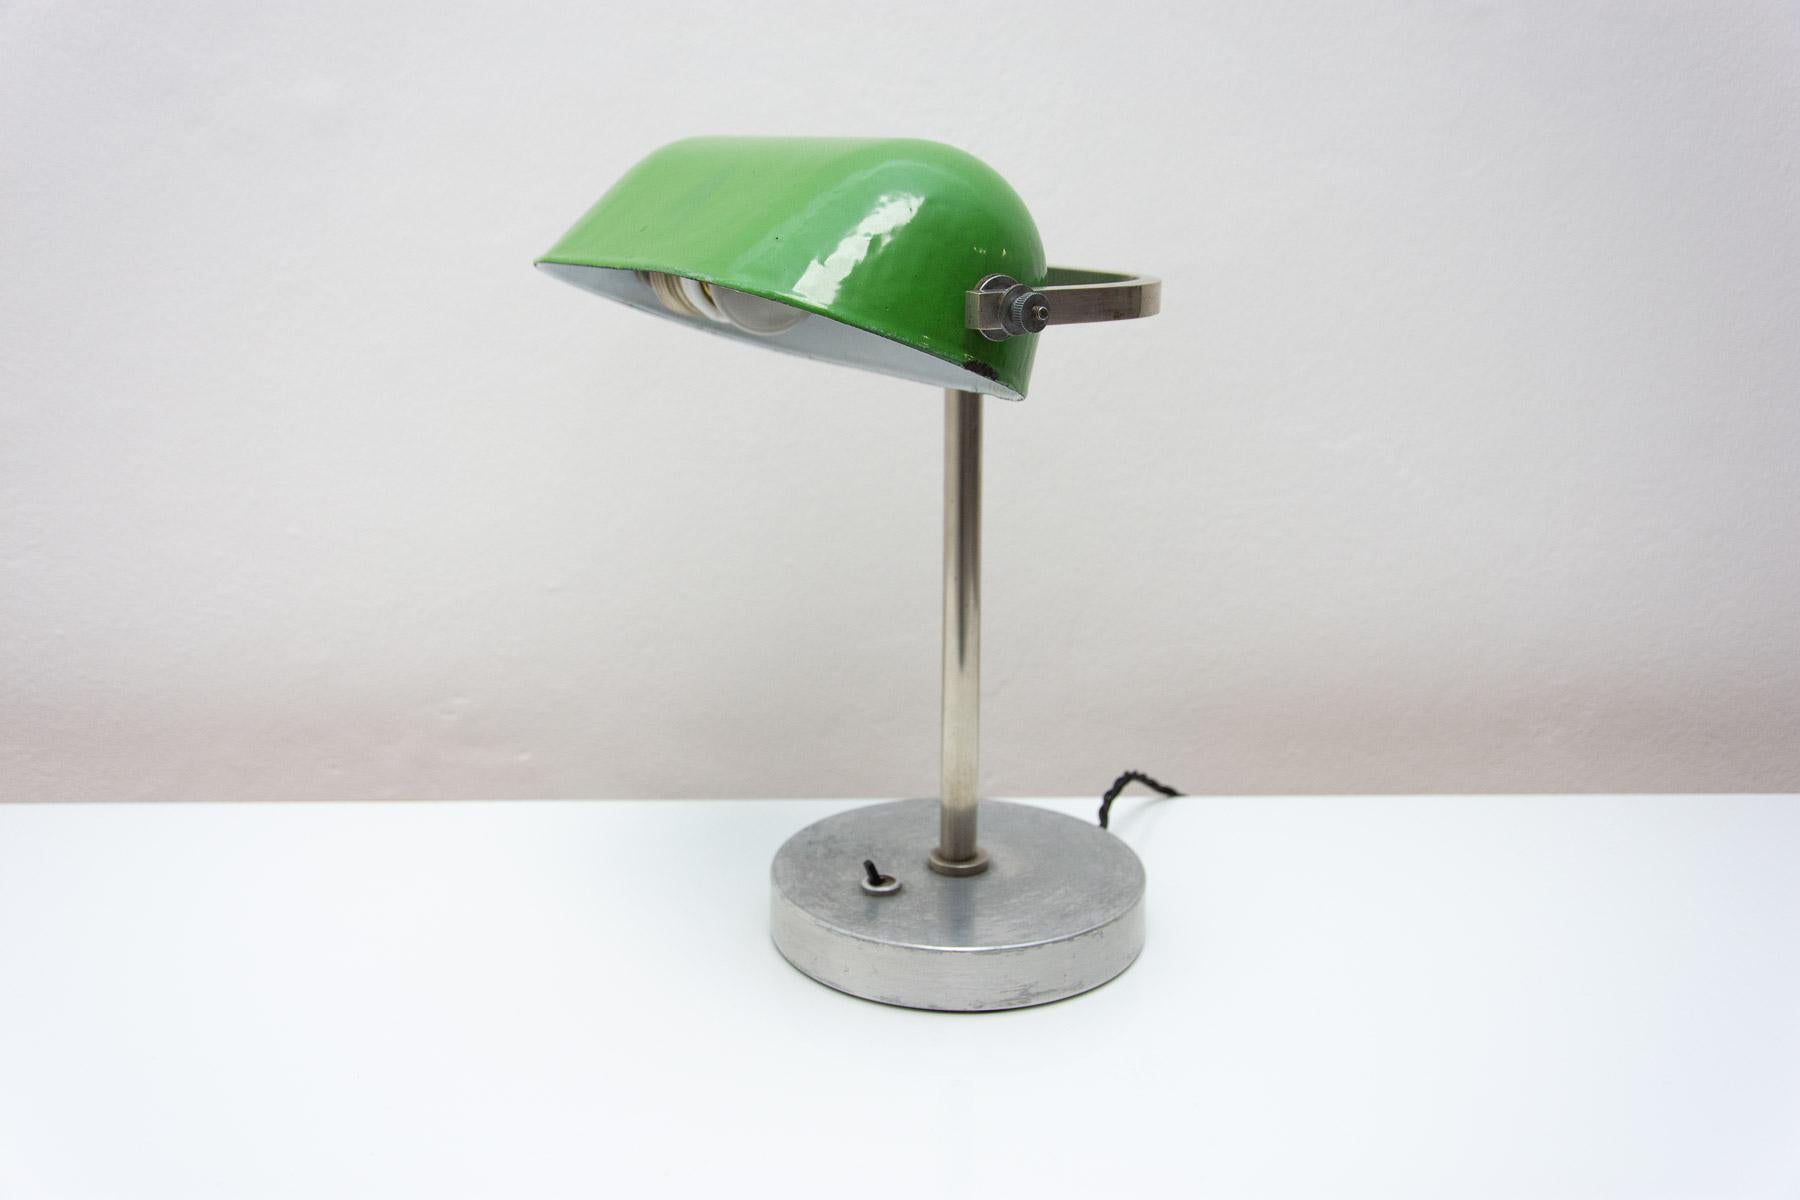 Lampe de bureau caractéristique, style Bauhaus, conçue en 1930. La lampe a une base chromée et un chapeau en métal émaillé. Le bras et le CAP sont réglables. Entièrement réglable et d'un aspect fantastique, il s'adapte à de nombreux intérieurs. En